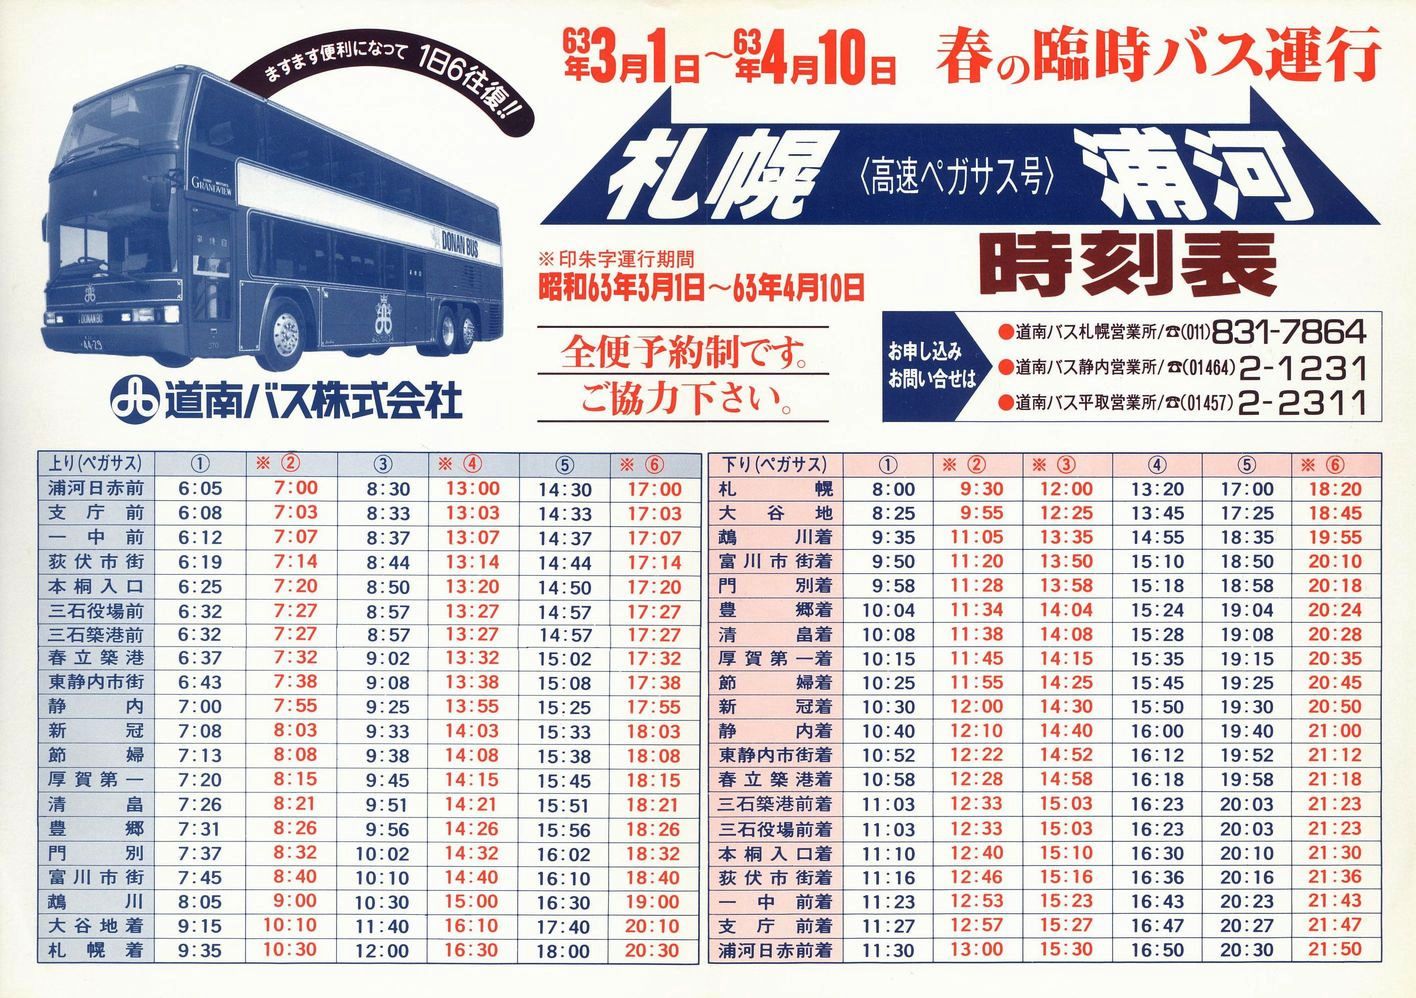 1988-03-01改正_道南バス_高速ペガサス号時刻表